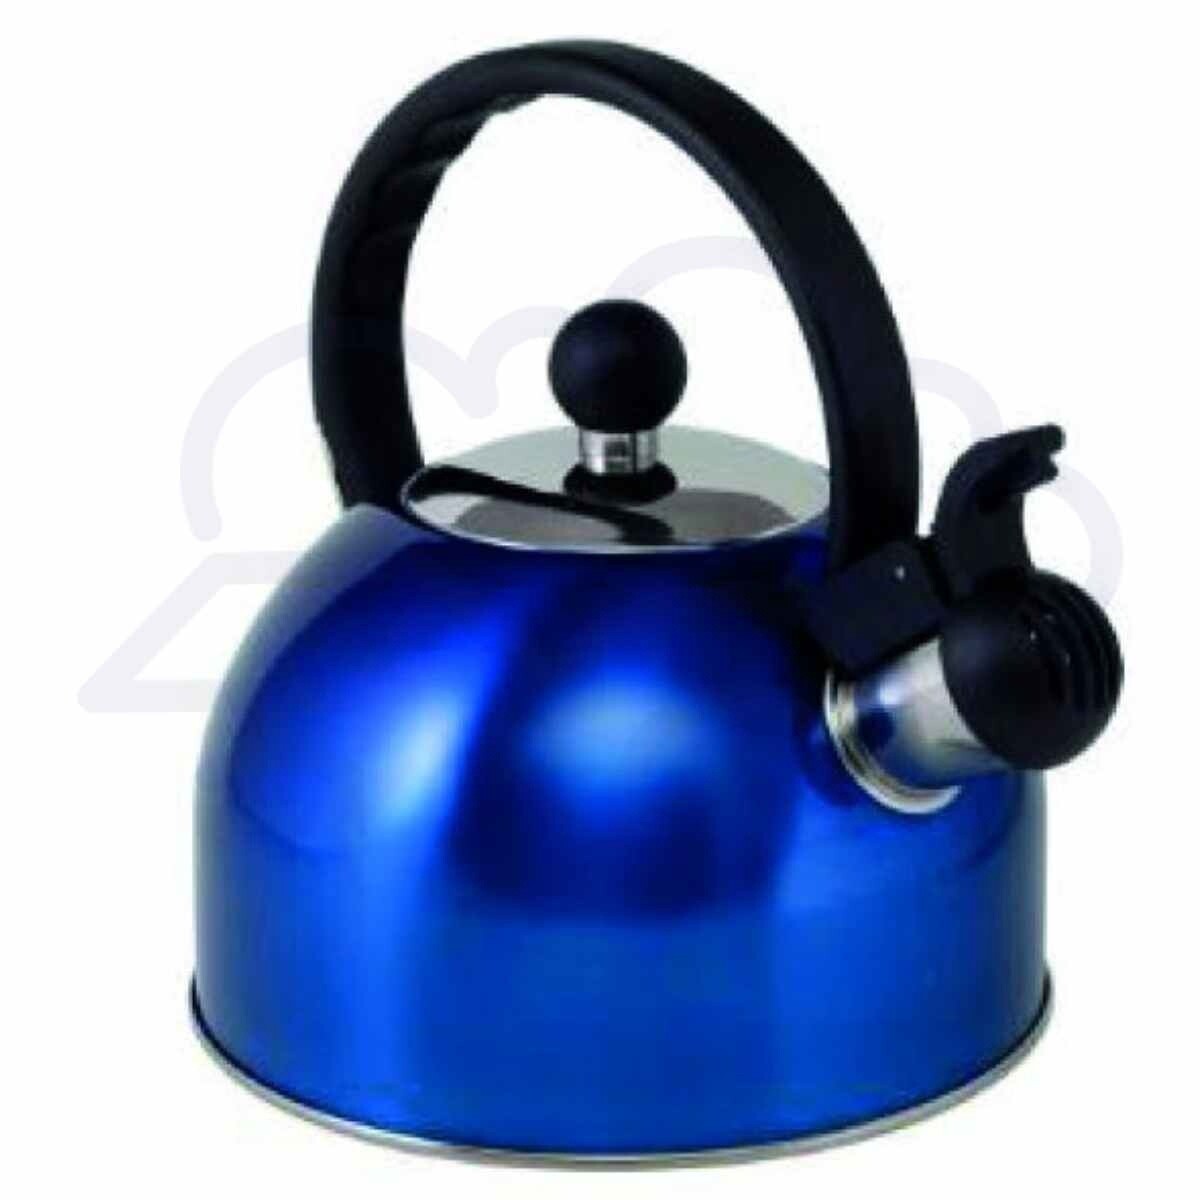 1.5 litre whistling kettle, blue